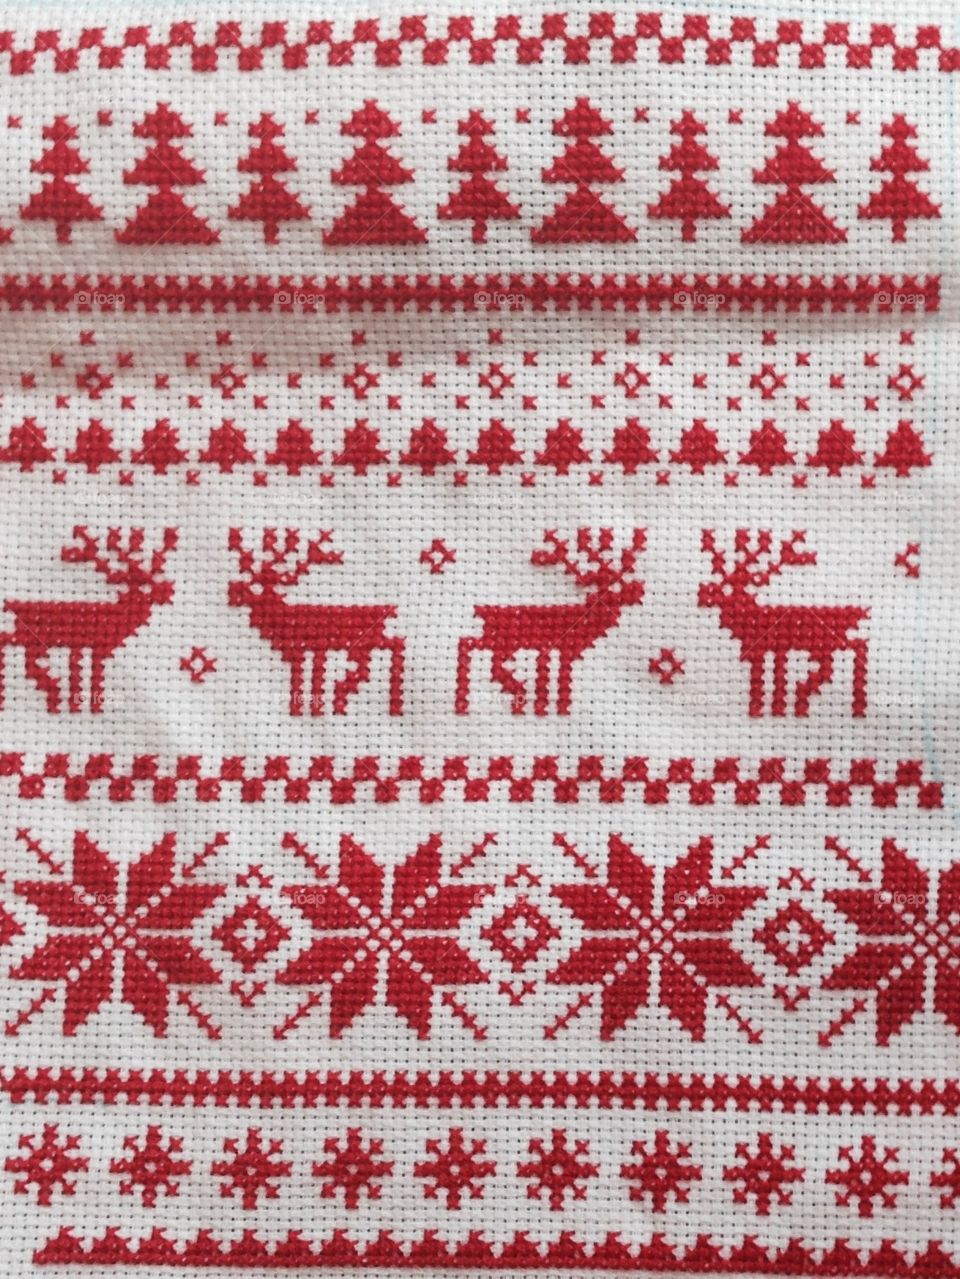 Christmas Cross-stitch pattern